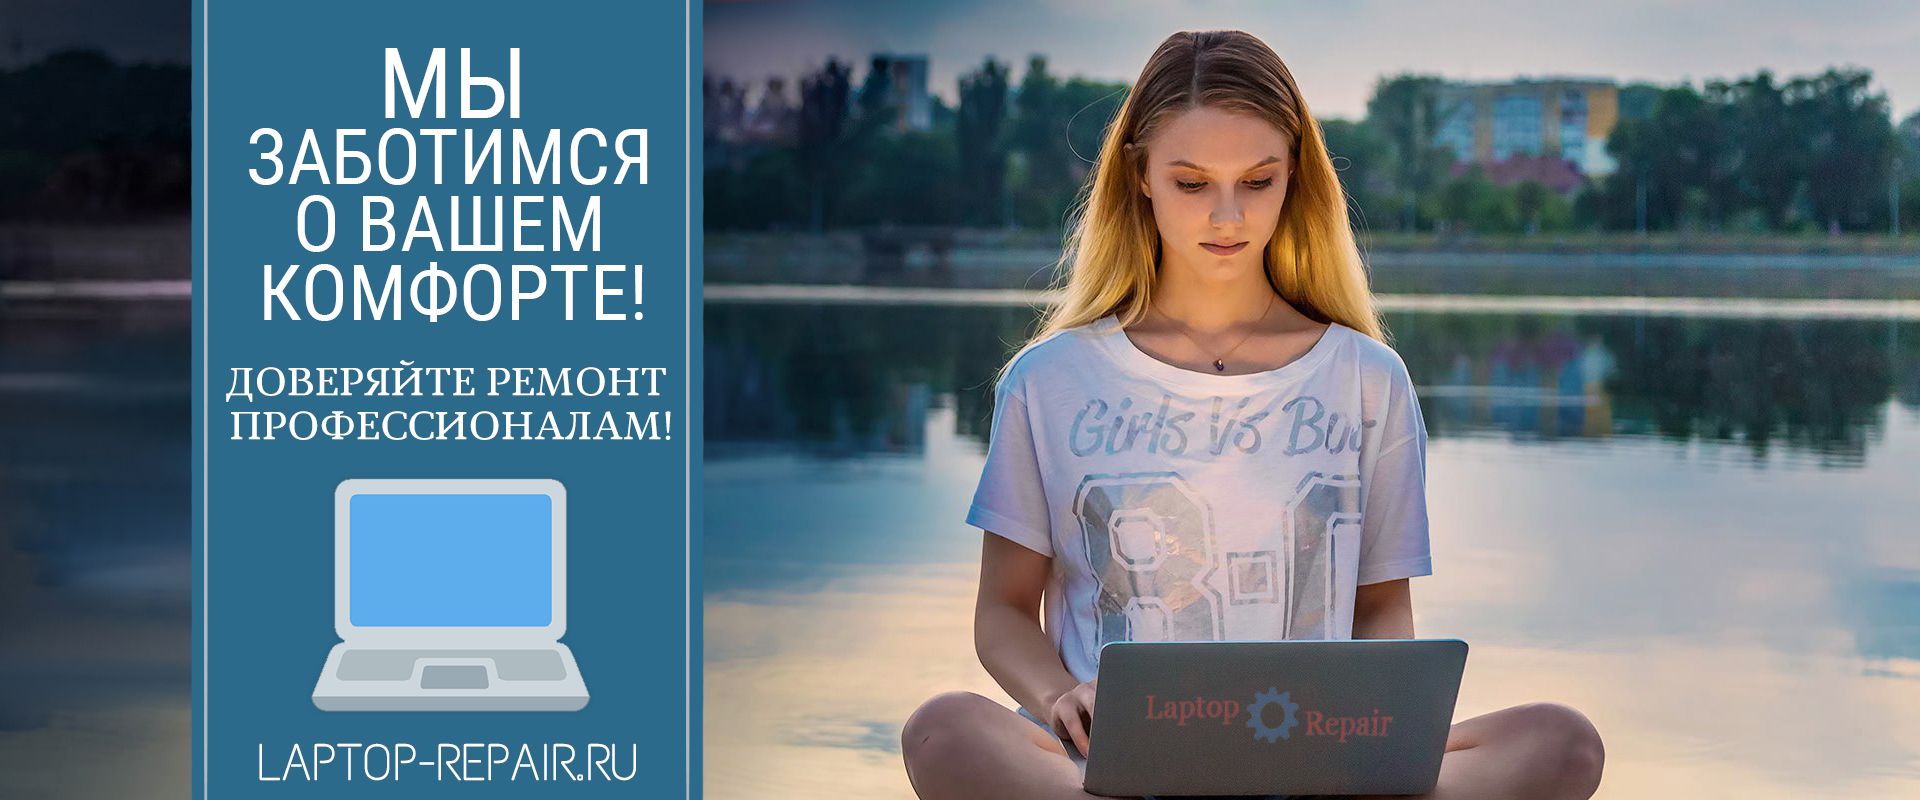 Мы заботимся о Вашем комфорте!
Доверяйте ремонт профессионалам • Laptop-Repair.ru